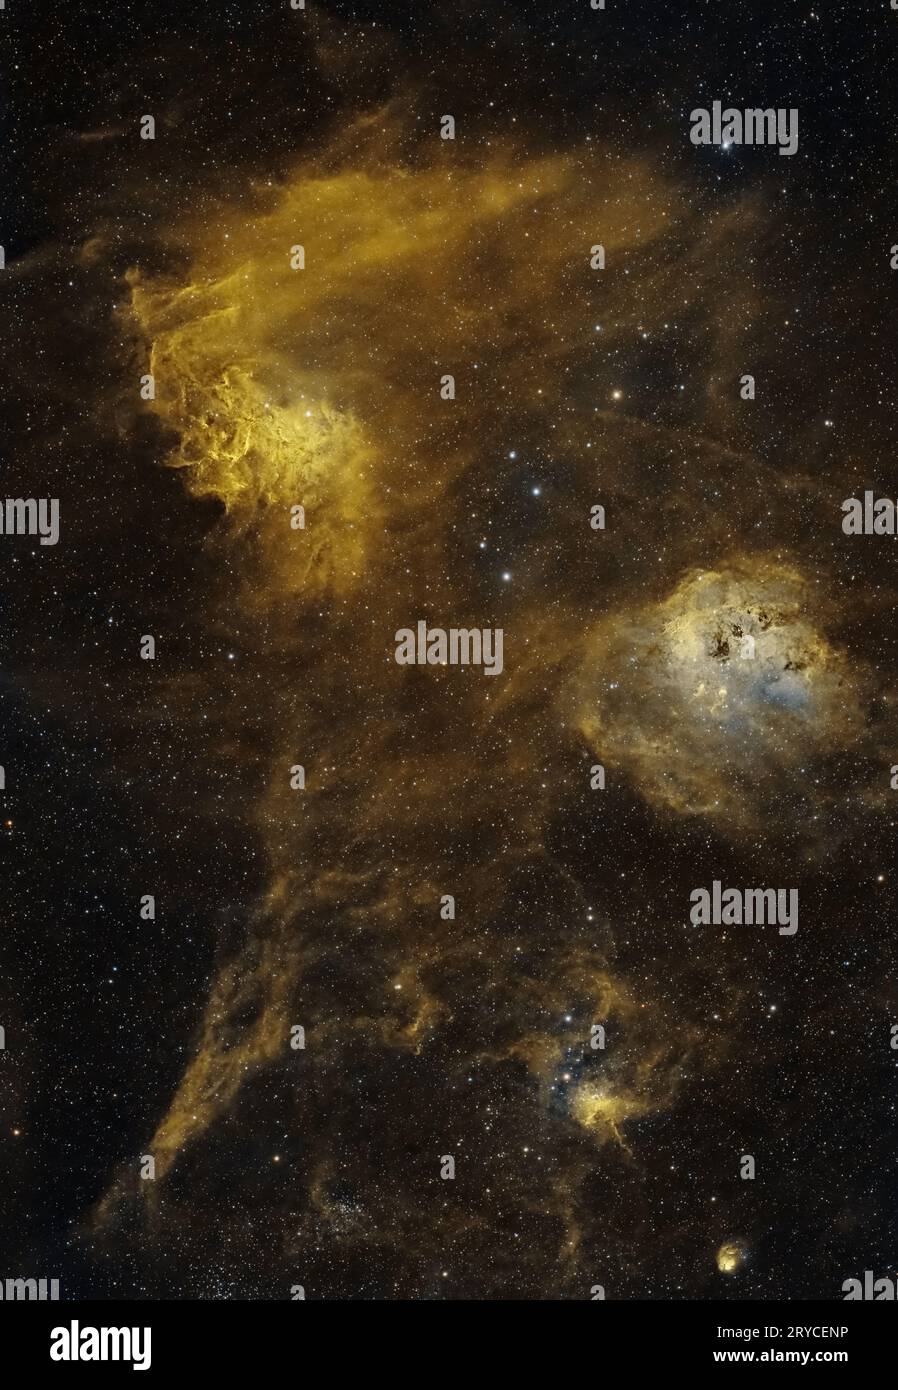 Nebulae in Auriga: Una Sinfonia cosmica. Tuffati nell'intricata danza delle nebulose Flaming Star, Tadpole, Spider e Fly. Hubble Foto Stock